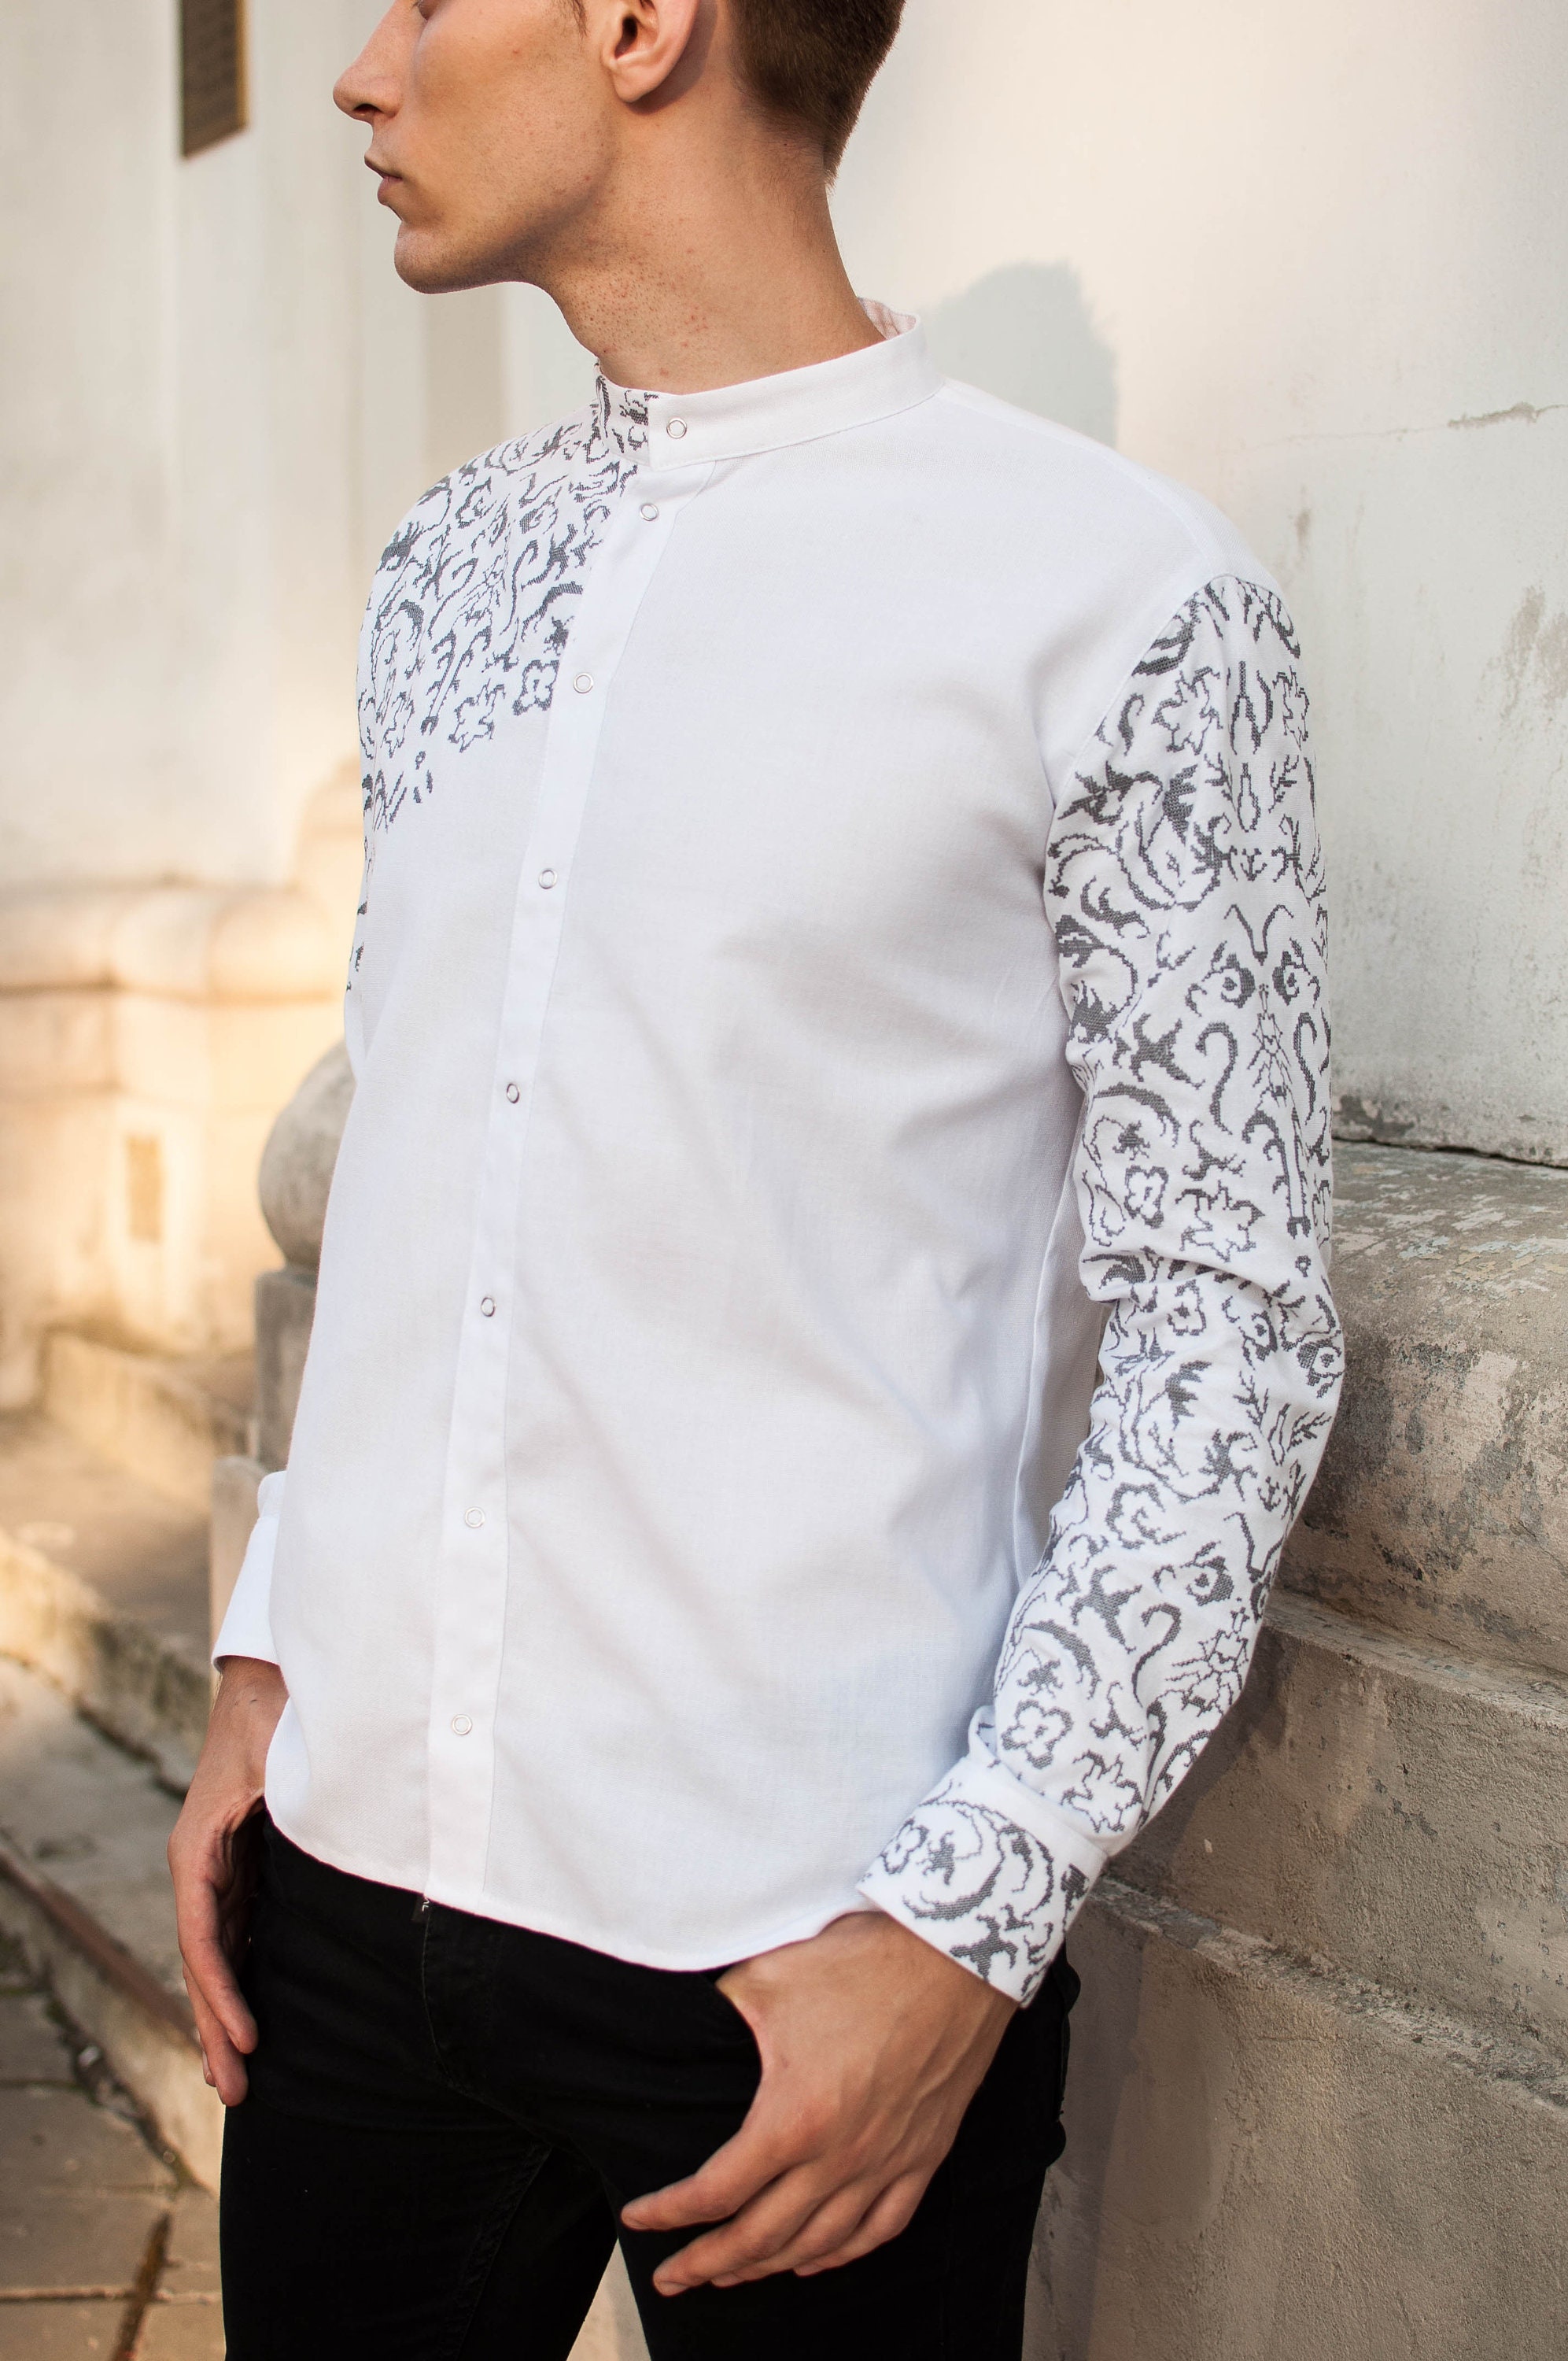 Modern vyshyvanka men grey embroidery white ukrainian shirt | Etsy